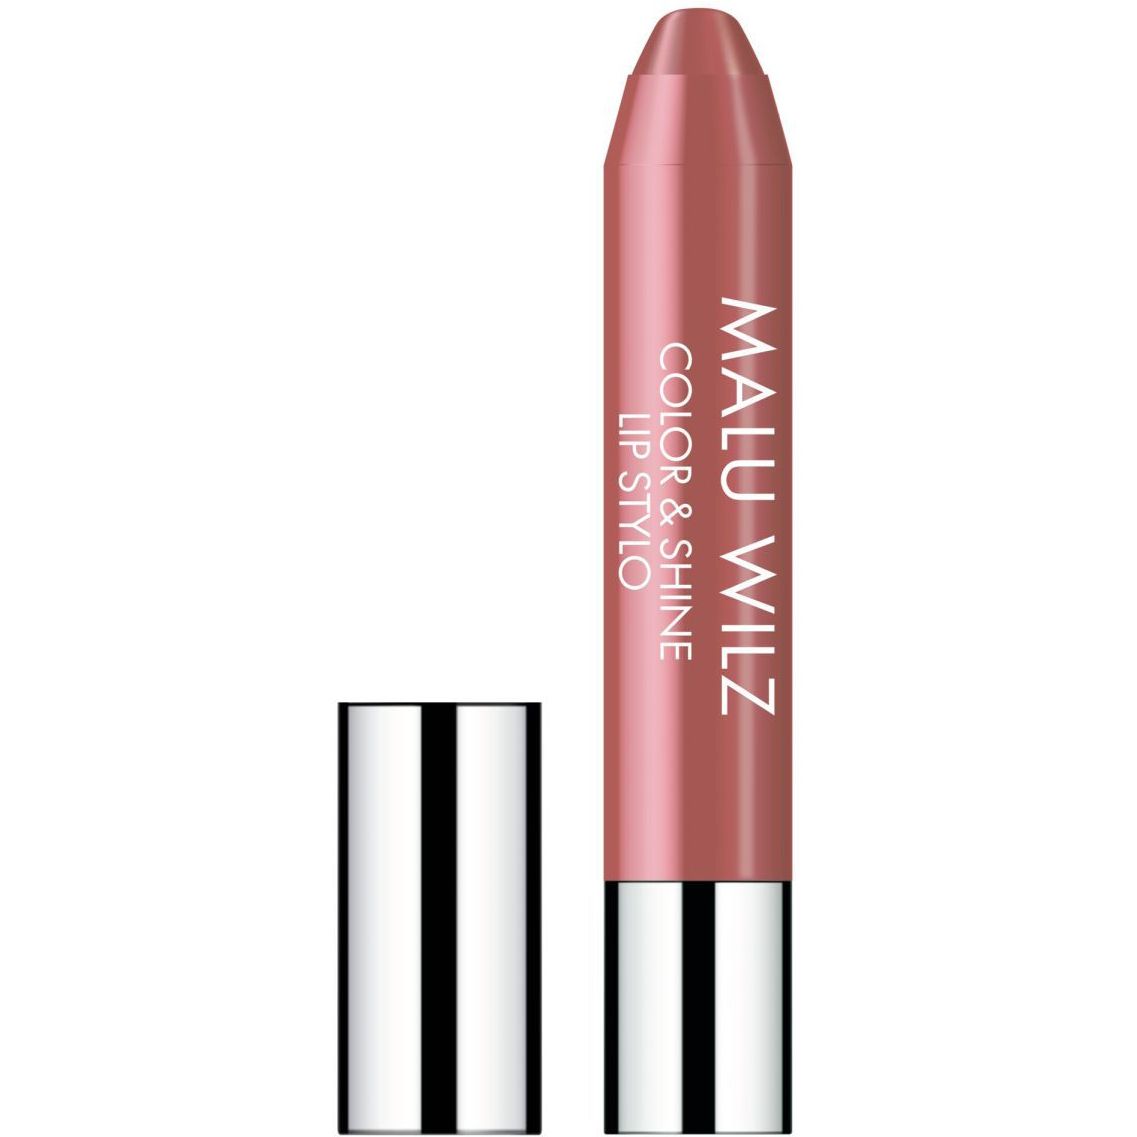 Зволожуюча губнапомада, Malu Wilz Color&Shine Lip Stylo, відтінок 10 (мигдально-рожевий), 11 г - фото 1